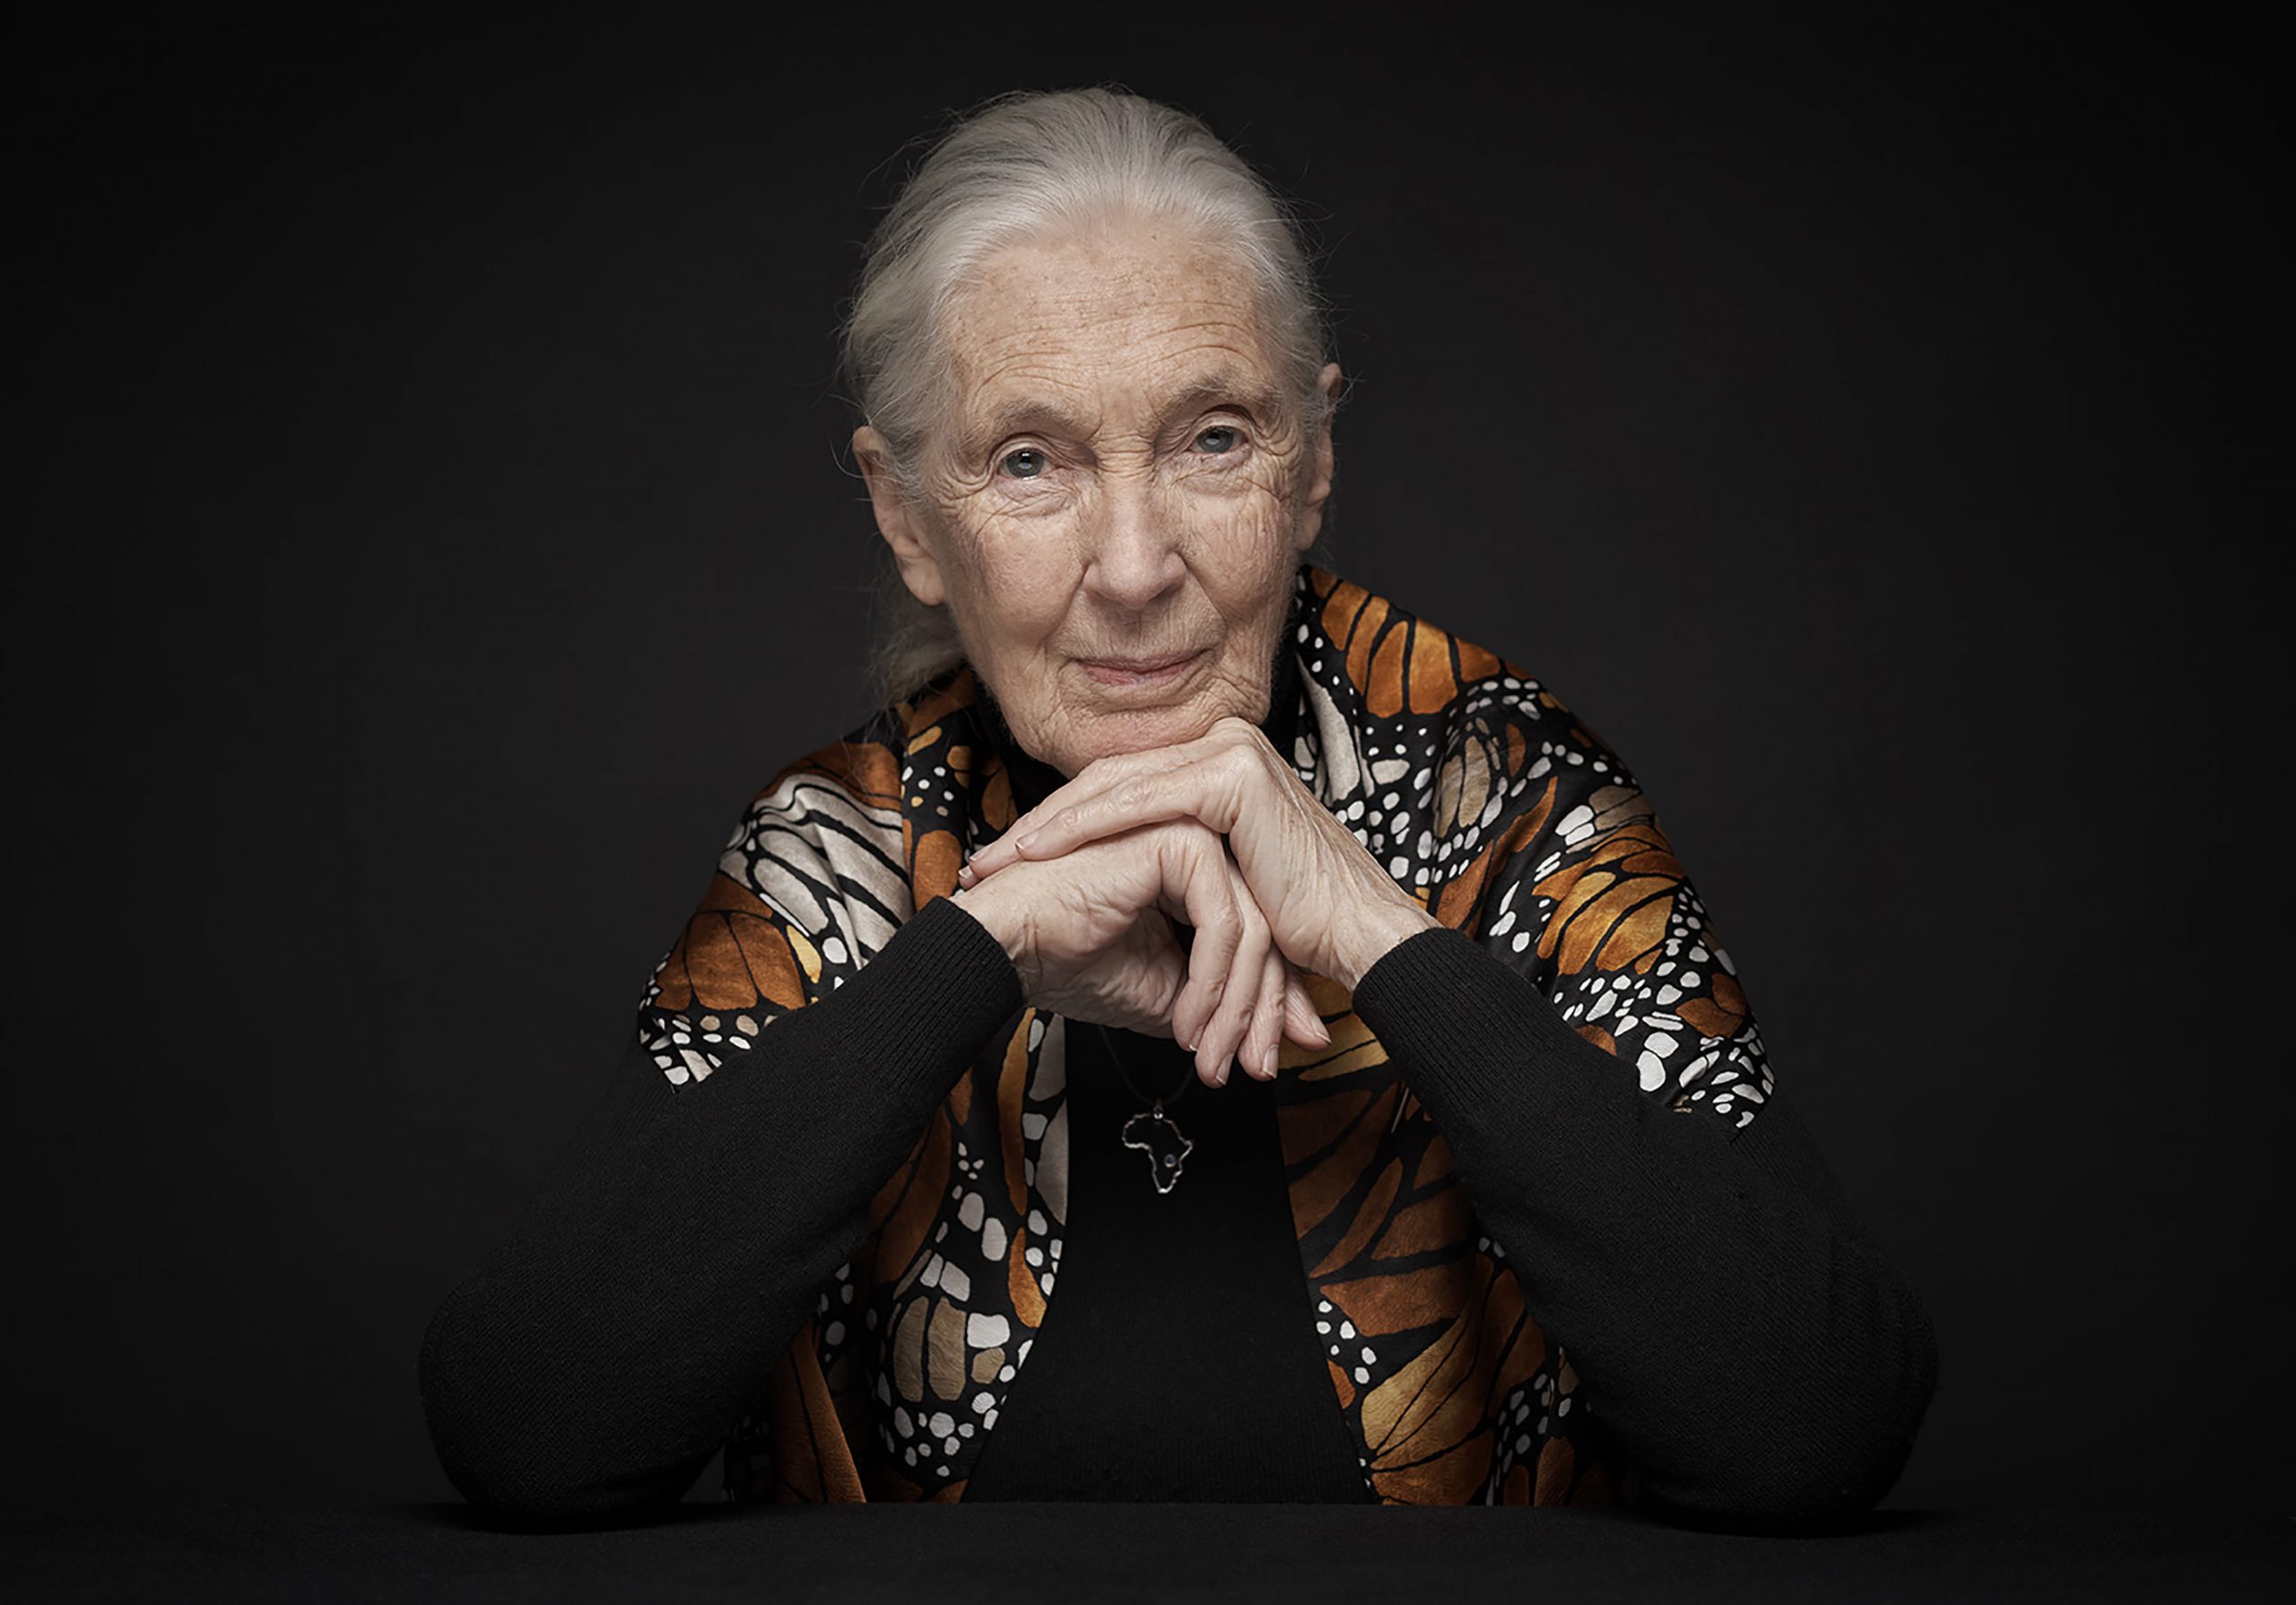 Jane Goodall sobre la crisis climática: "si dejáramos de comer toda esta carne, la diferencia sería enorme" 